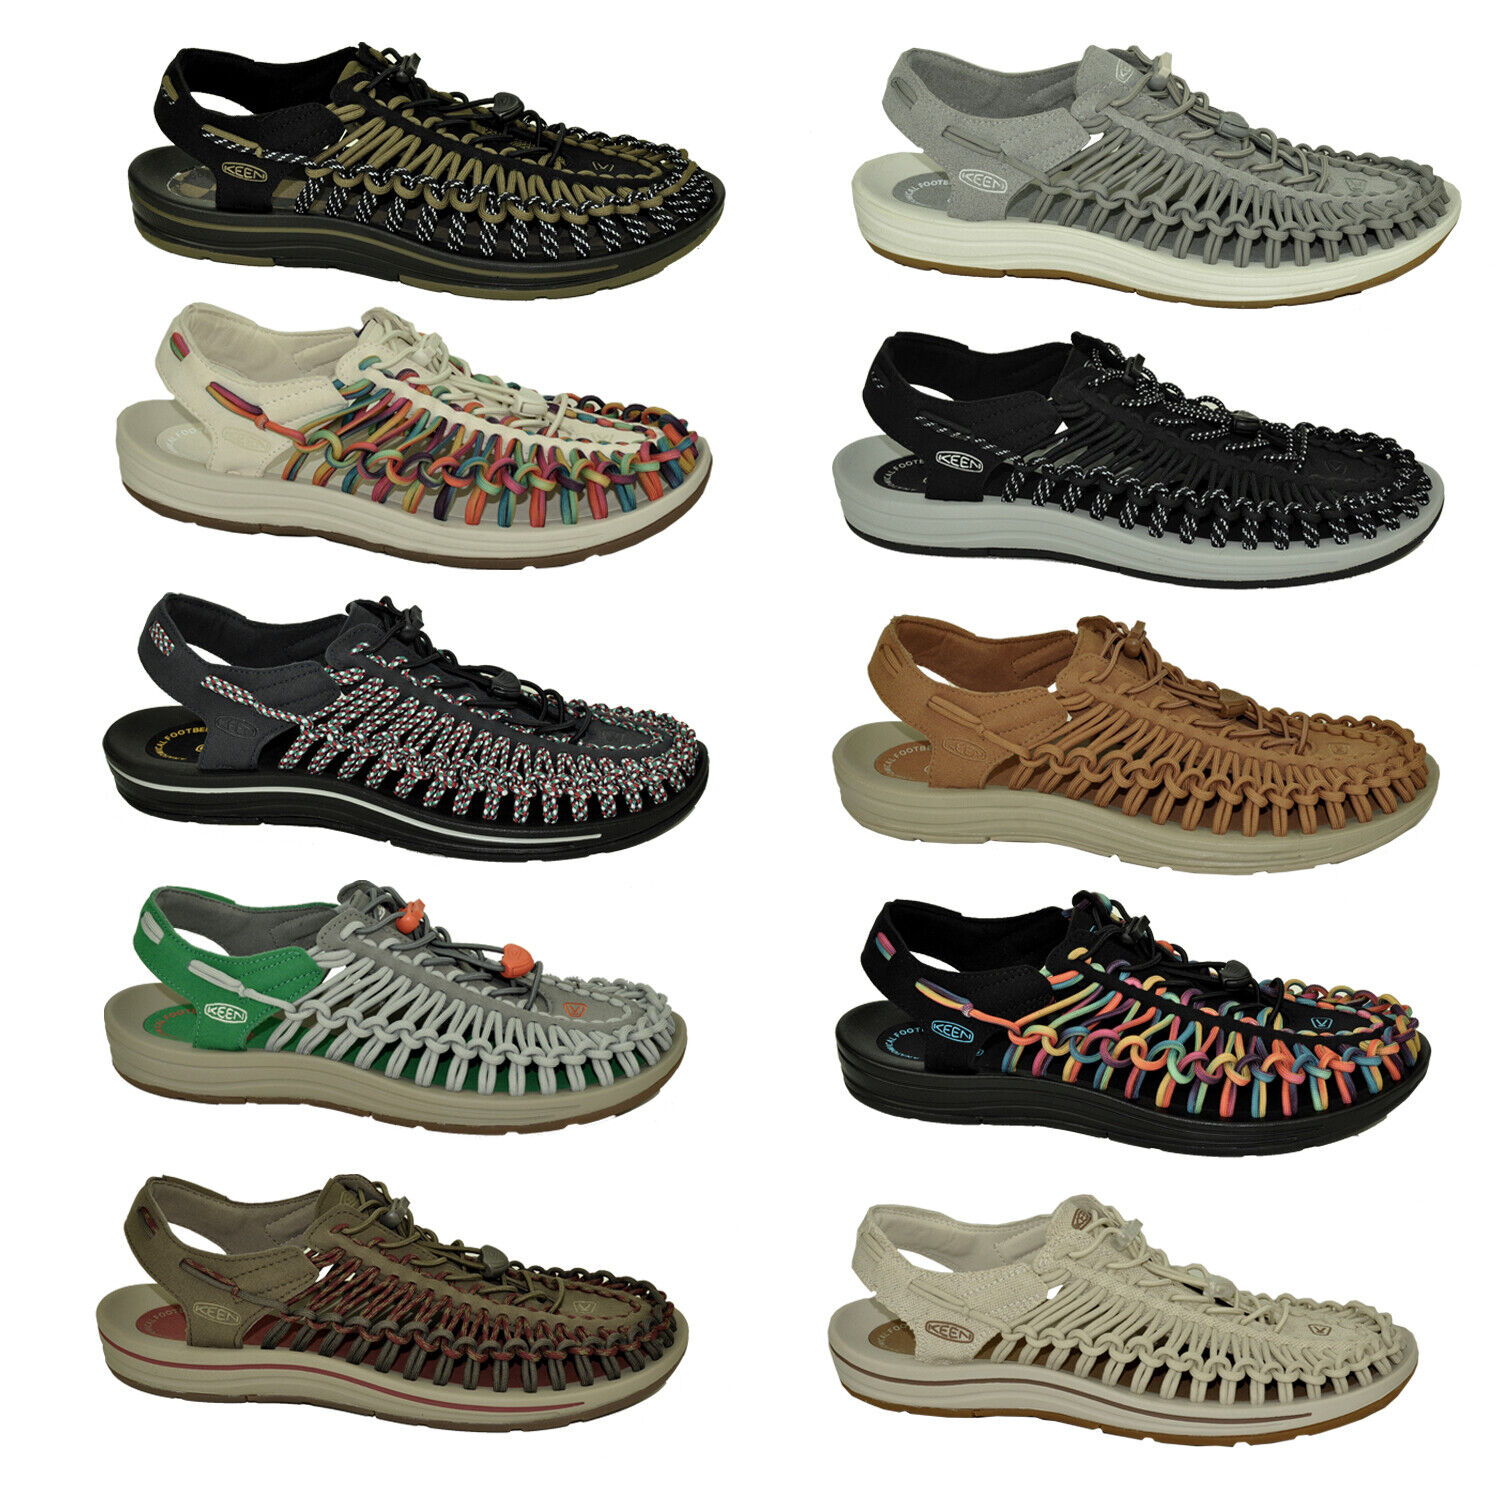 KEEN Uneek Sandalen Trekkingsandalen Ultra Leicht Leder Canvas Herren Sneaker Modell - Farbe 1026228 - Weiß Schuhgröße EUR 44 - UK 9,5 - US 10,5